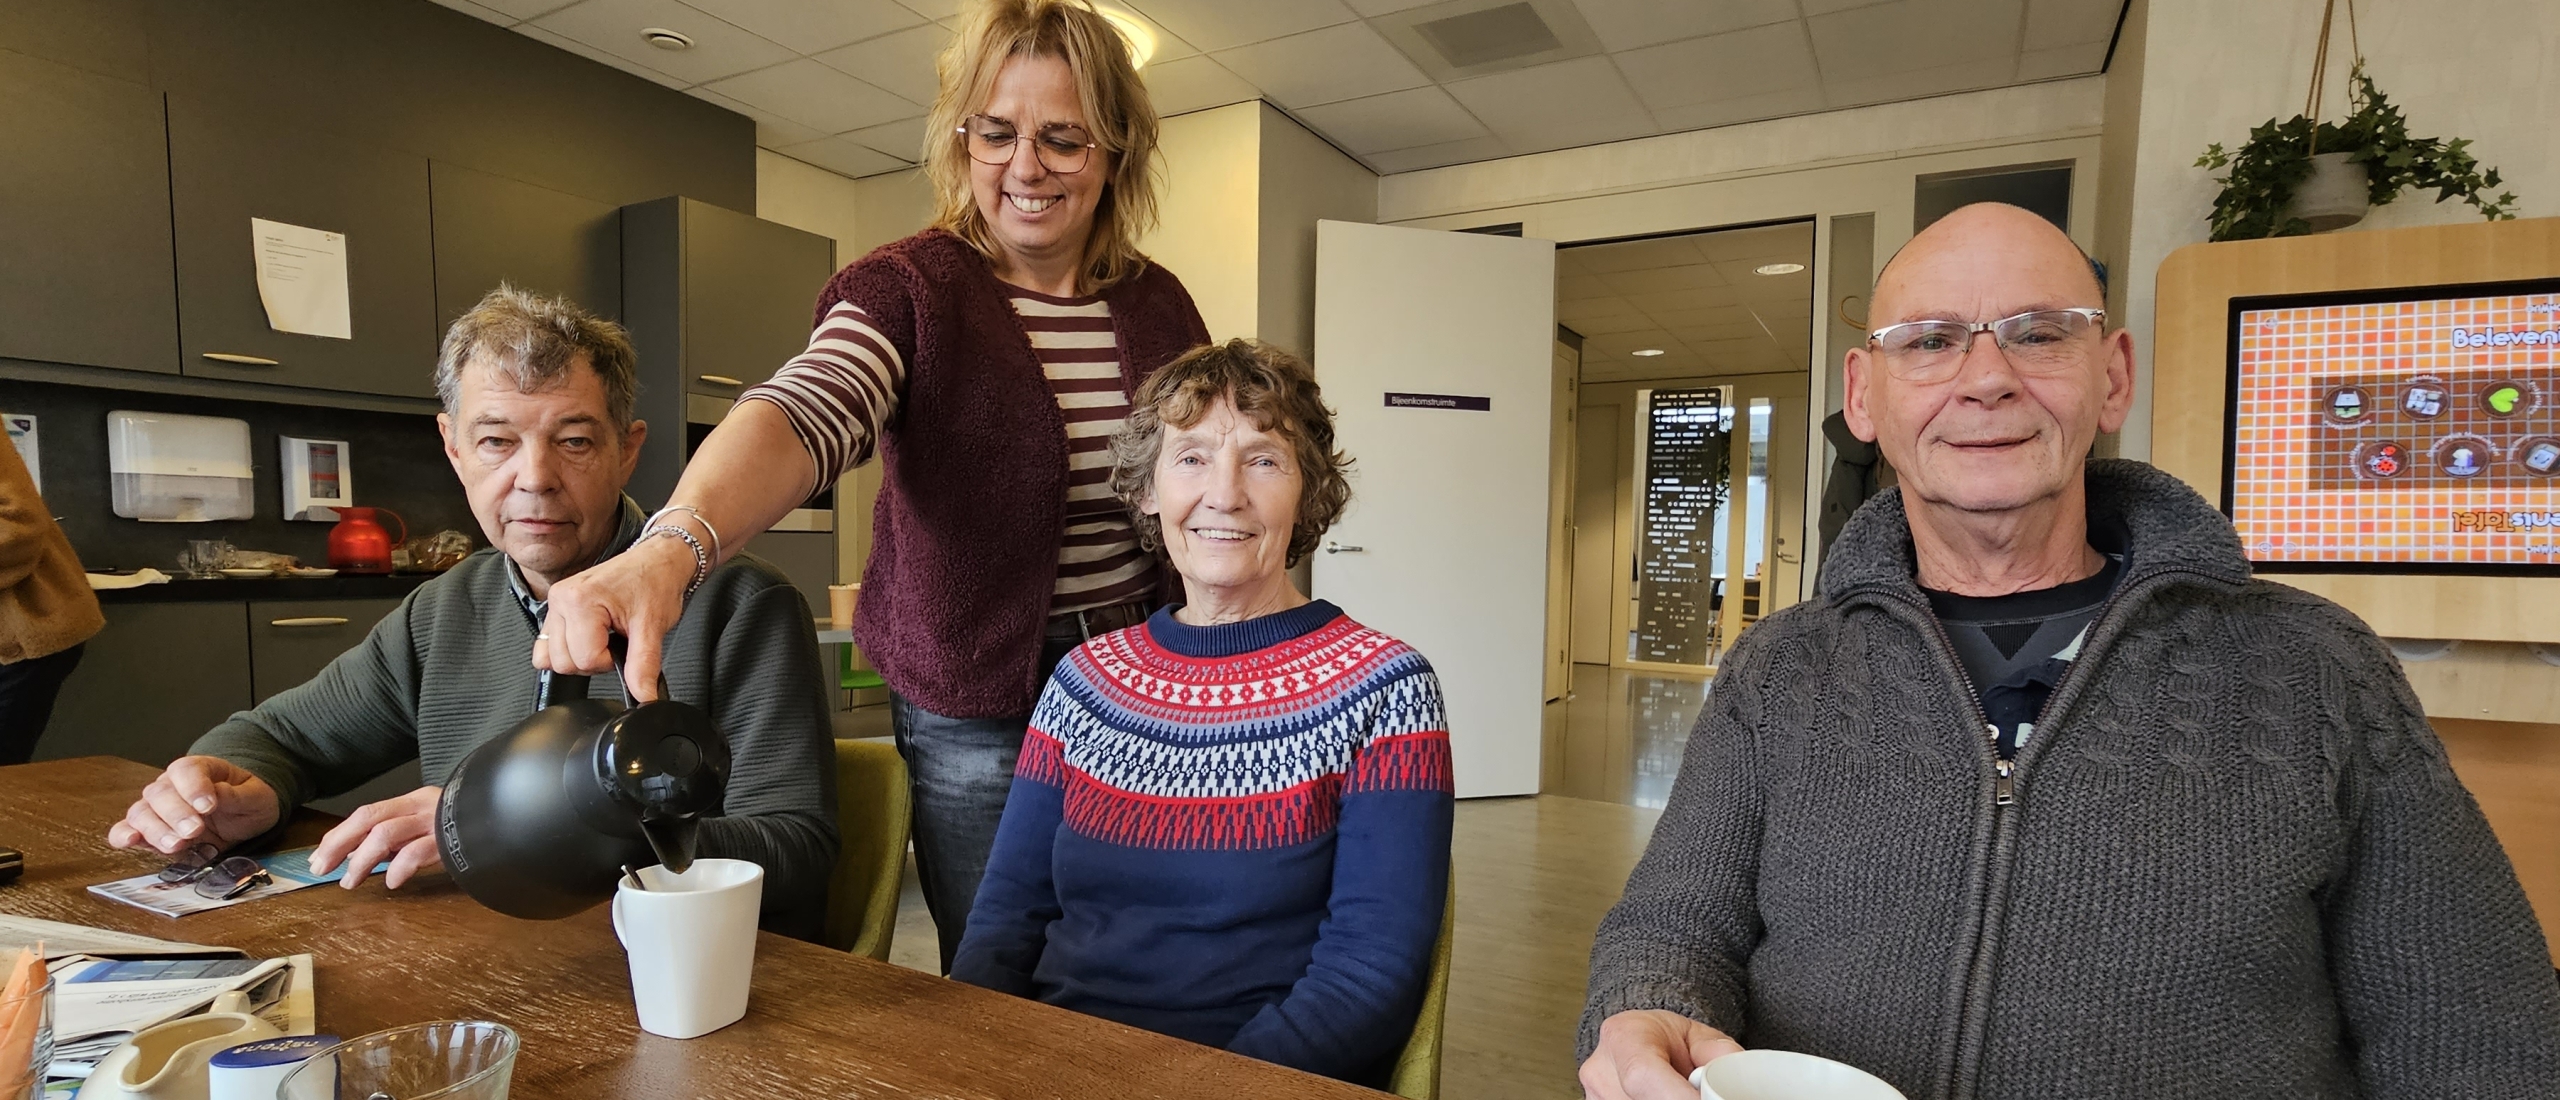 Het Odensehuis: Een laagdrempelige ontmoetingsplaats voor iedereen die te maken heeft met dementie